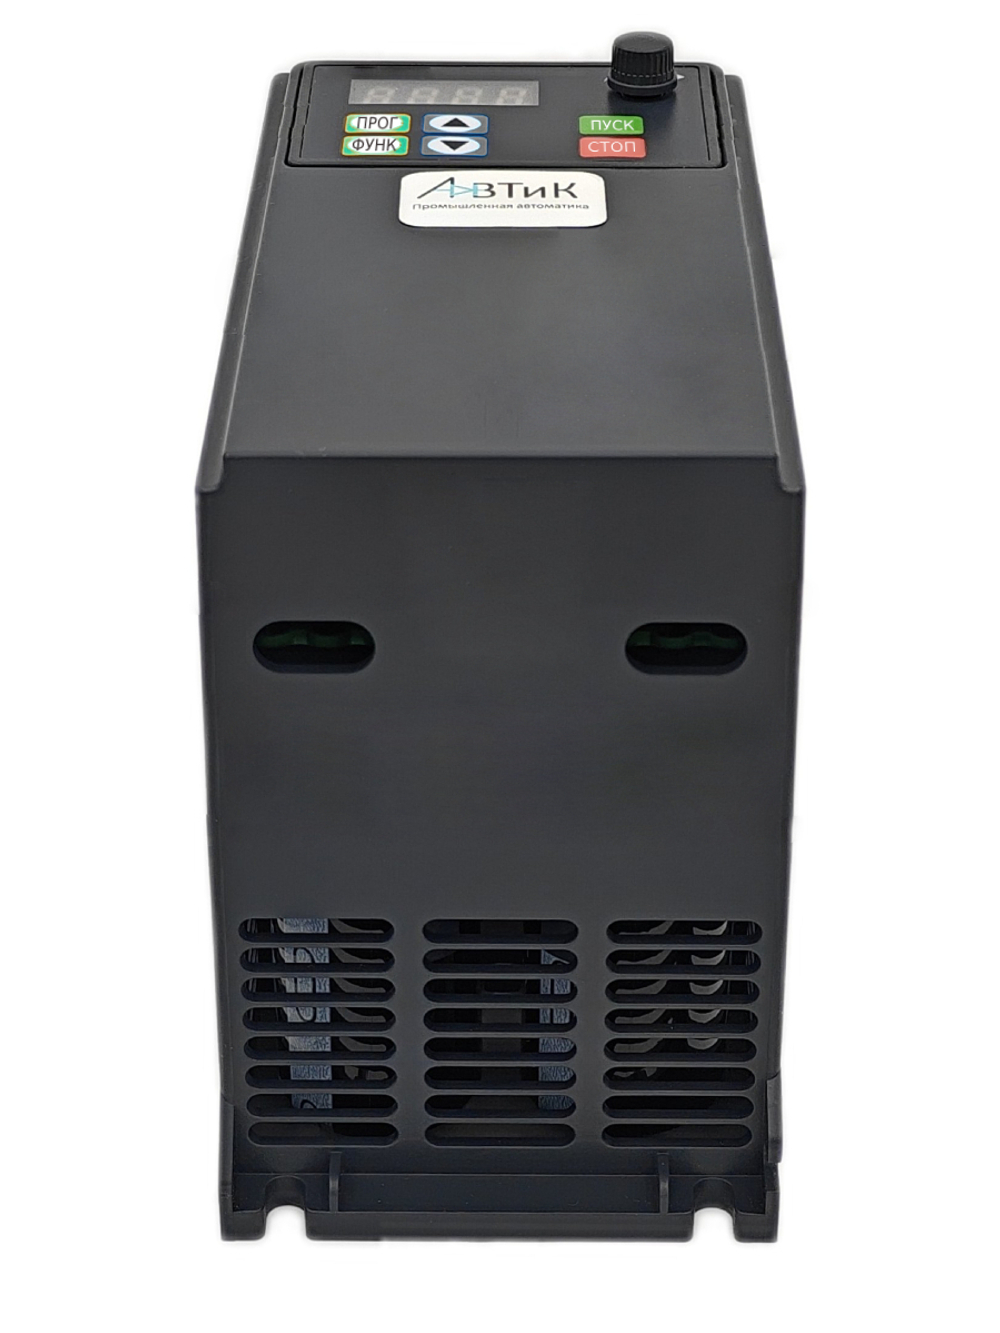 Преобразователь частоты SD552T4D-150% 5.5 кВт 380В